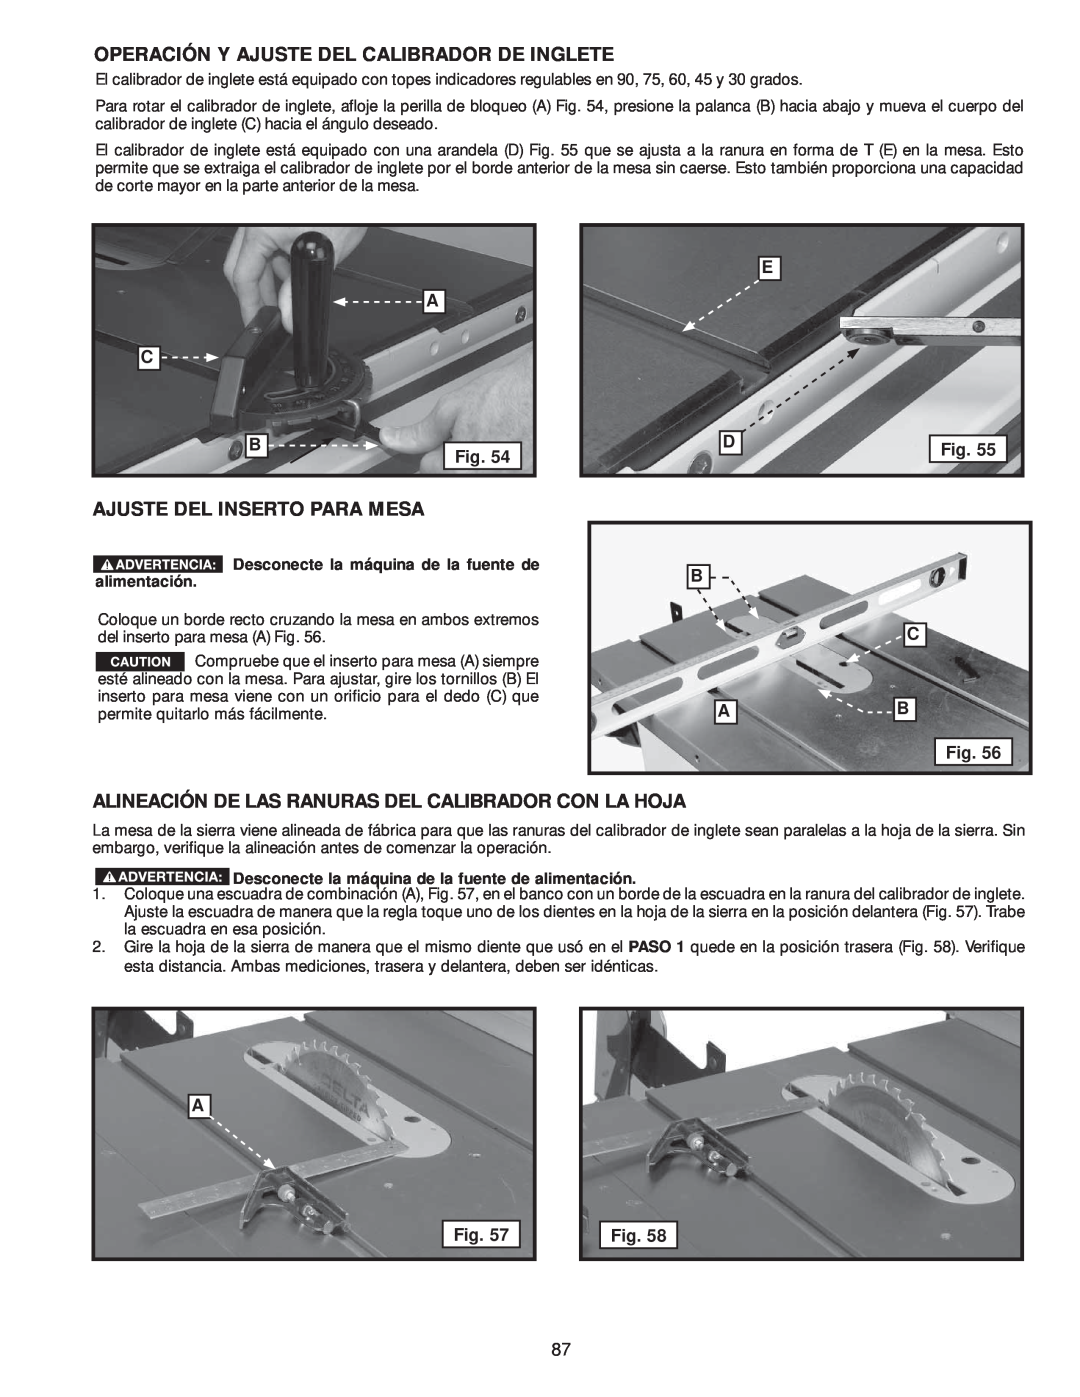 Delta 36-978, 36-979 instruction manual Operación Y Ajuste Del Calibrador De Inglete, Ajuste Del Inserto Para Mesa 